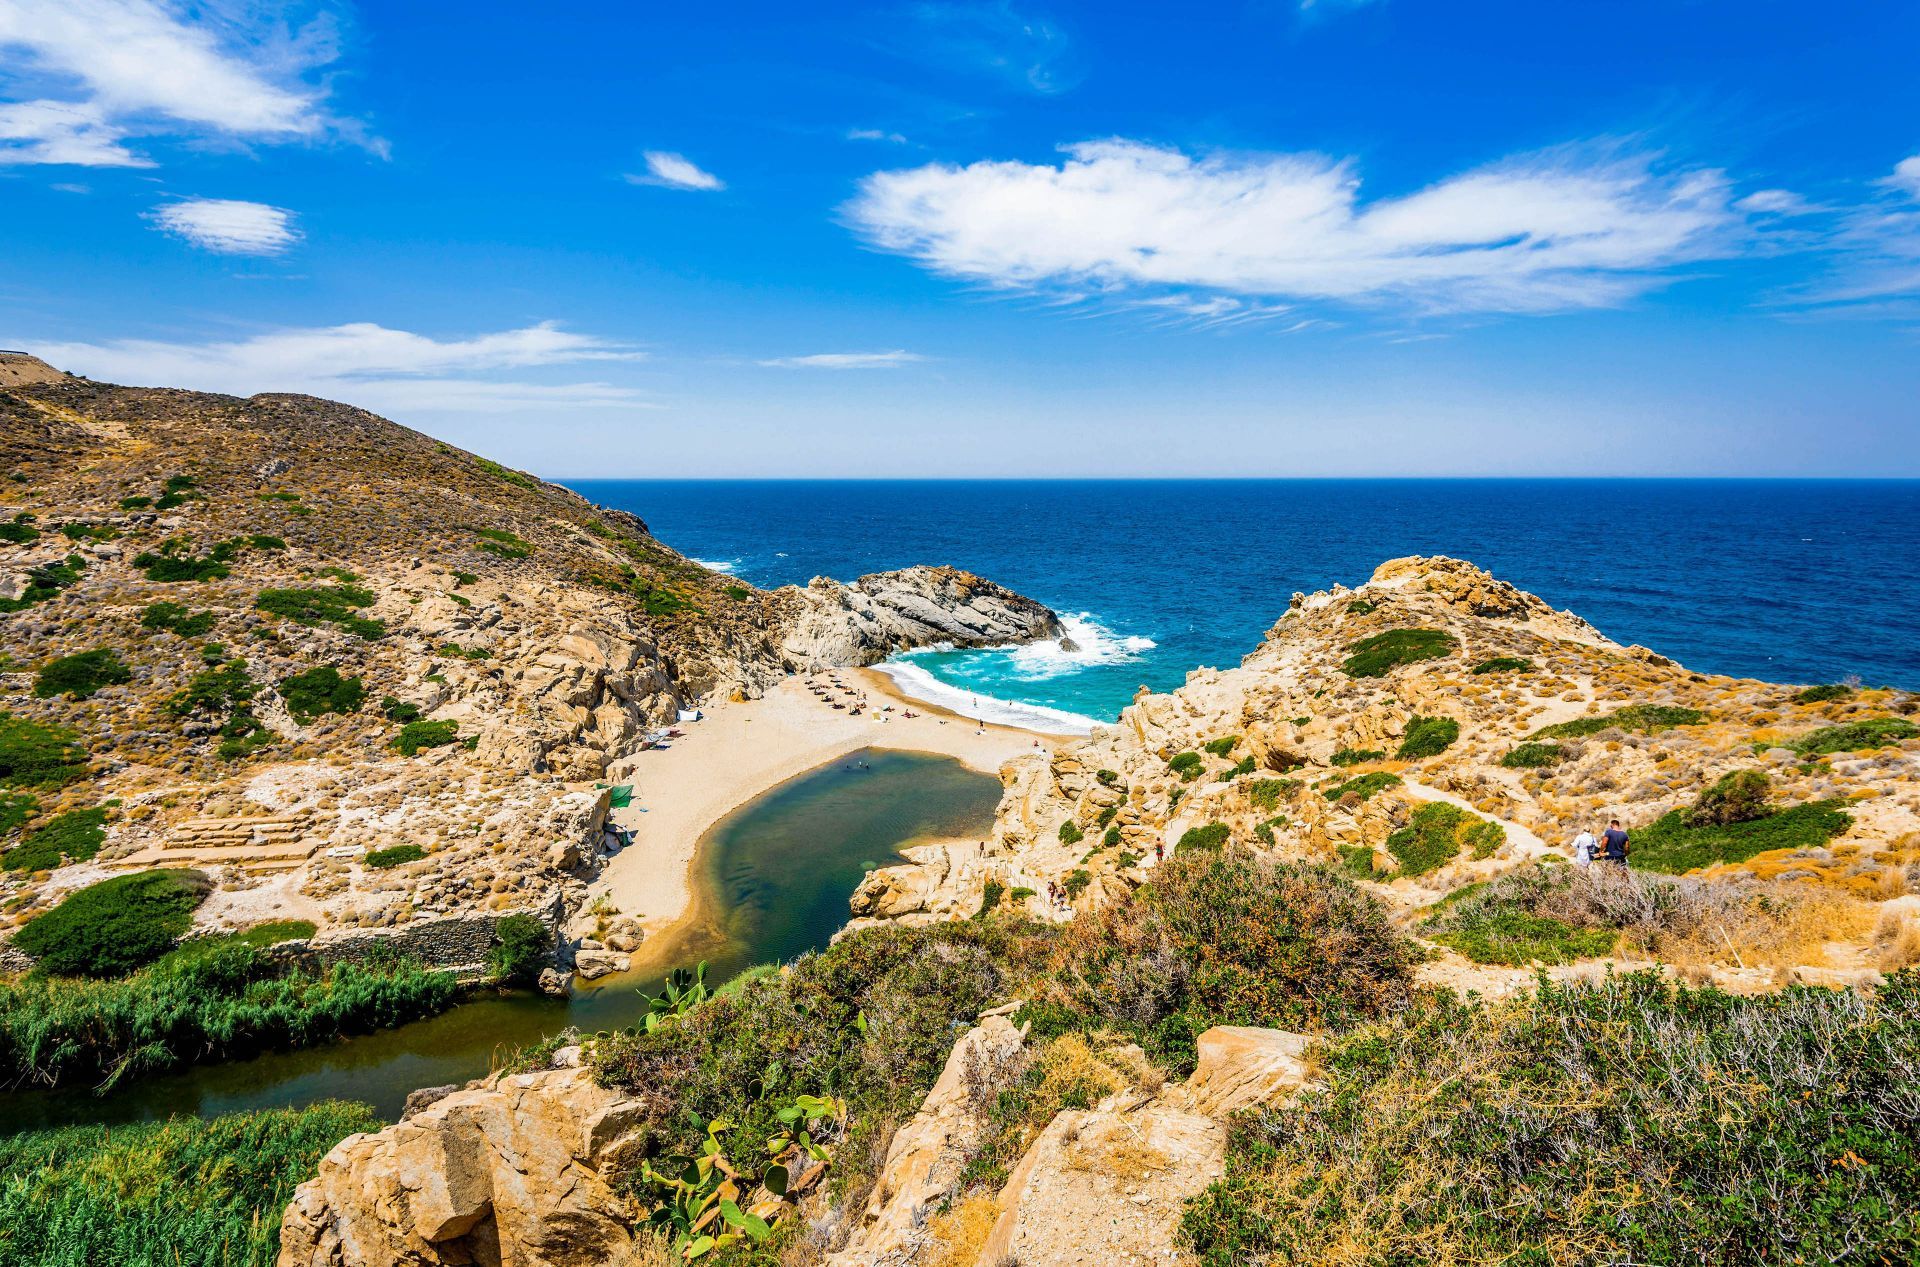 Đảo Ikaria sở hữu vẻ đẹp thơ mộng tựa tranh vẽ